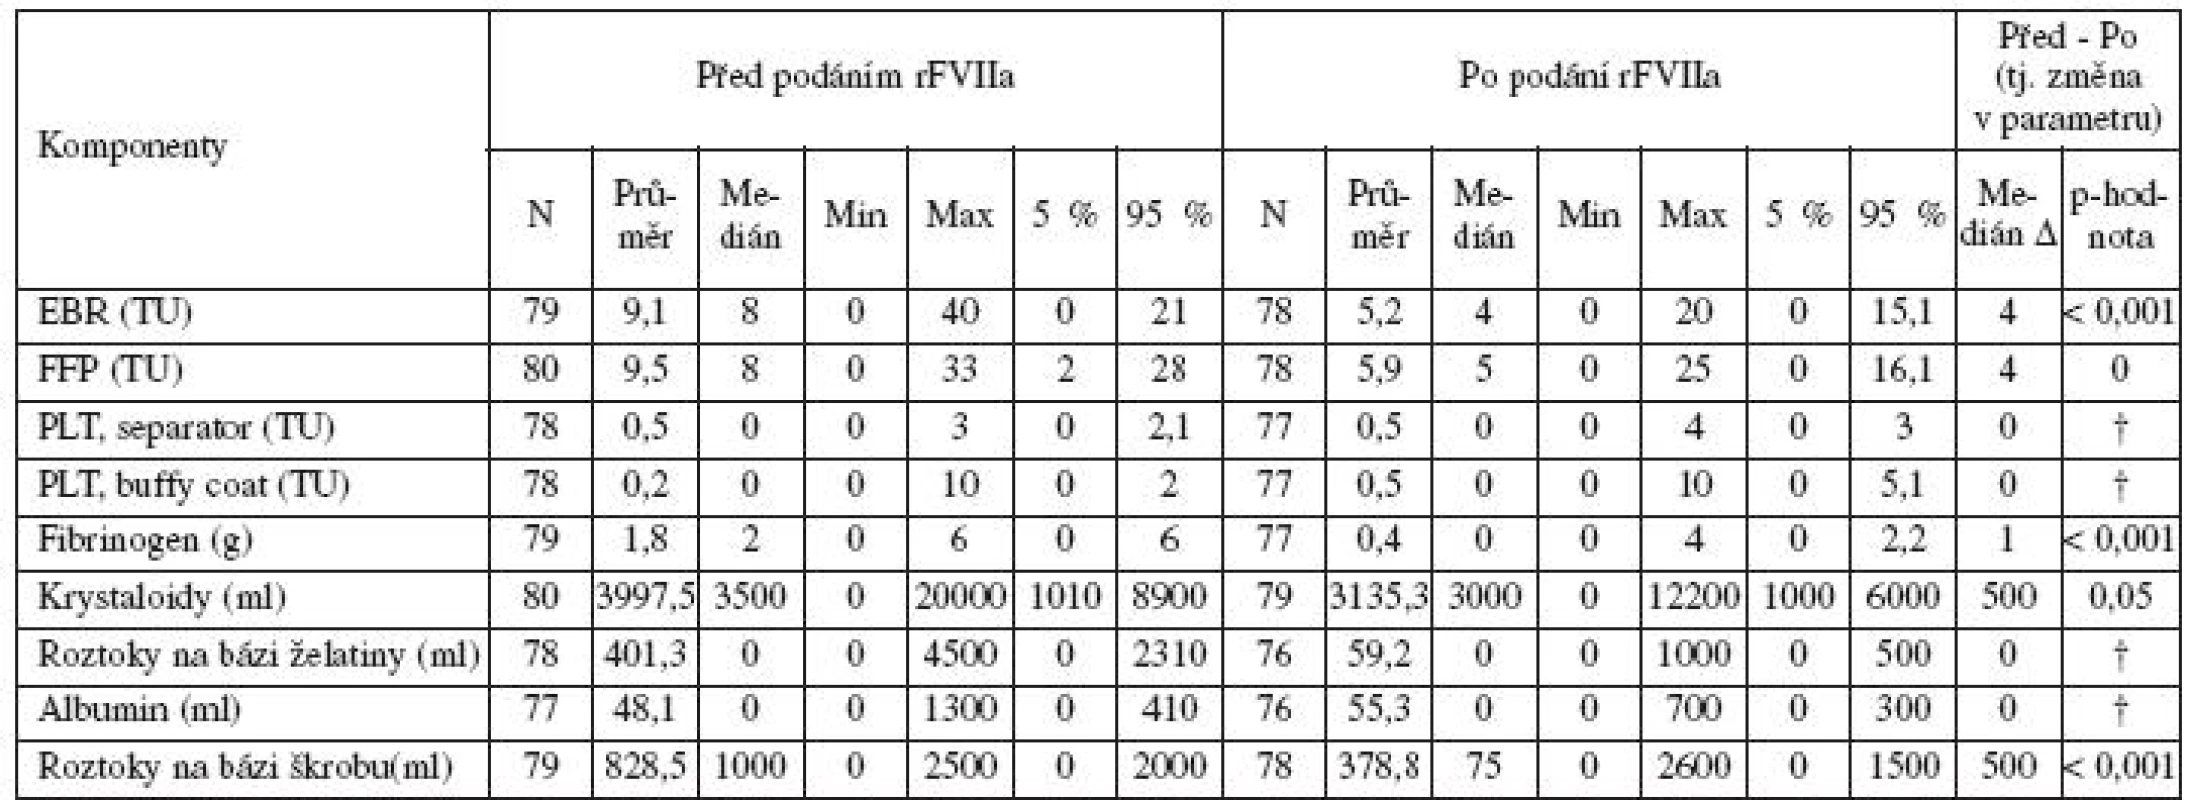 Pacientky s PPH léčené rFVIIa; porovnání množství aplikovaných transfuzních přípravků, krevních derivátů a náhradních roztoků 24 hodin před podáním a 24 h po podání rFVIIa
(* srovnání není možné vzhledem k více než polovině záznamů s nulovou spotřebou)